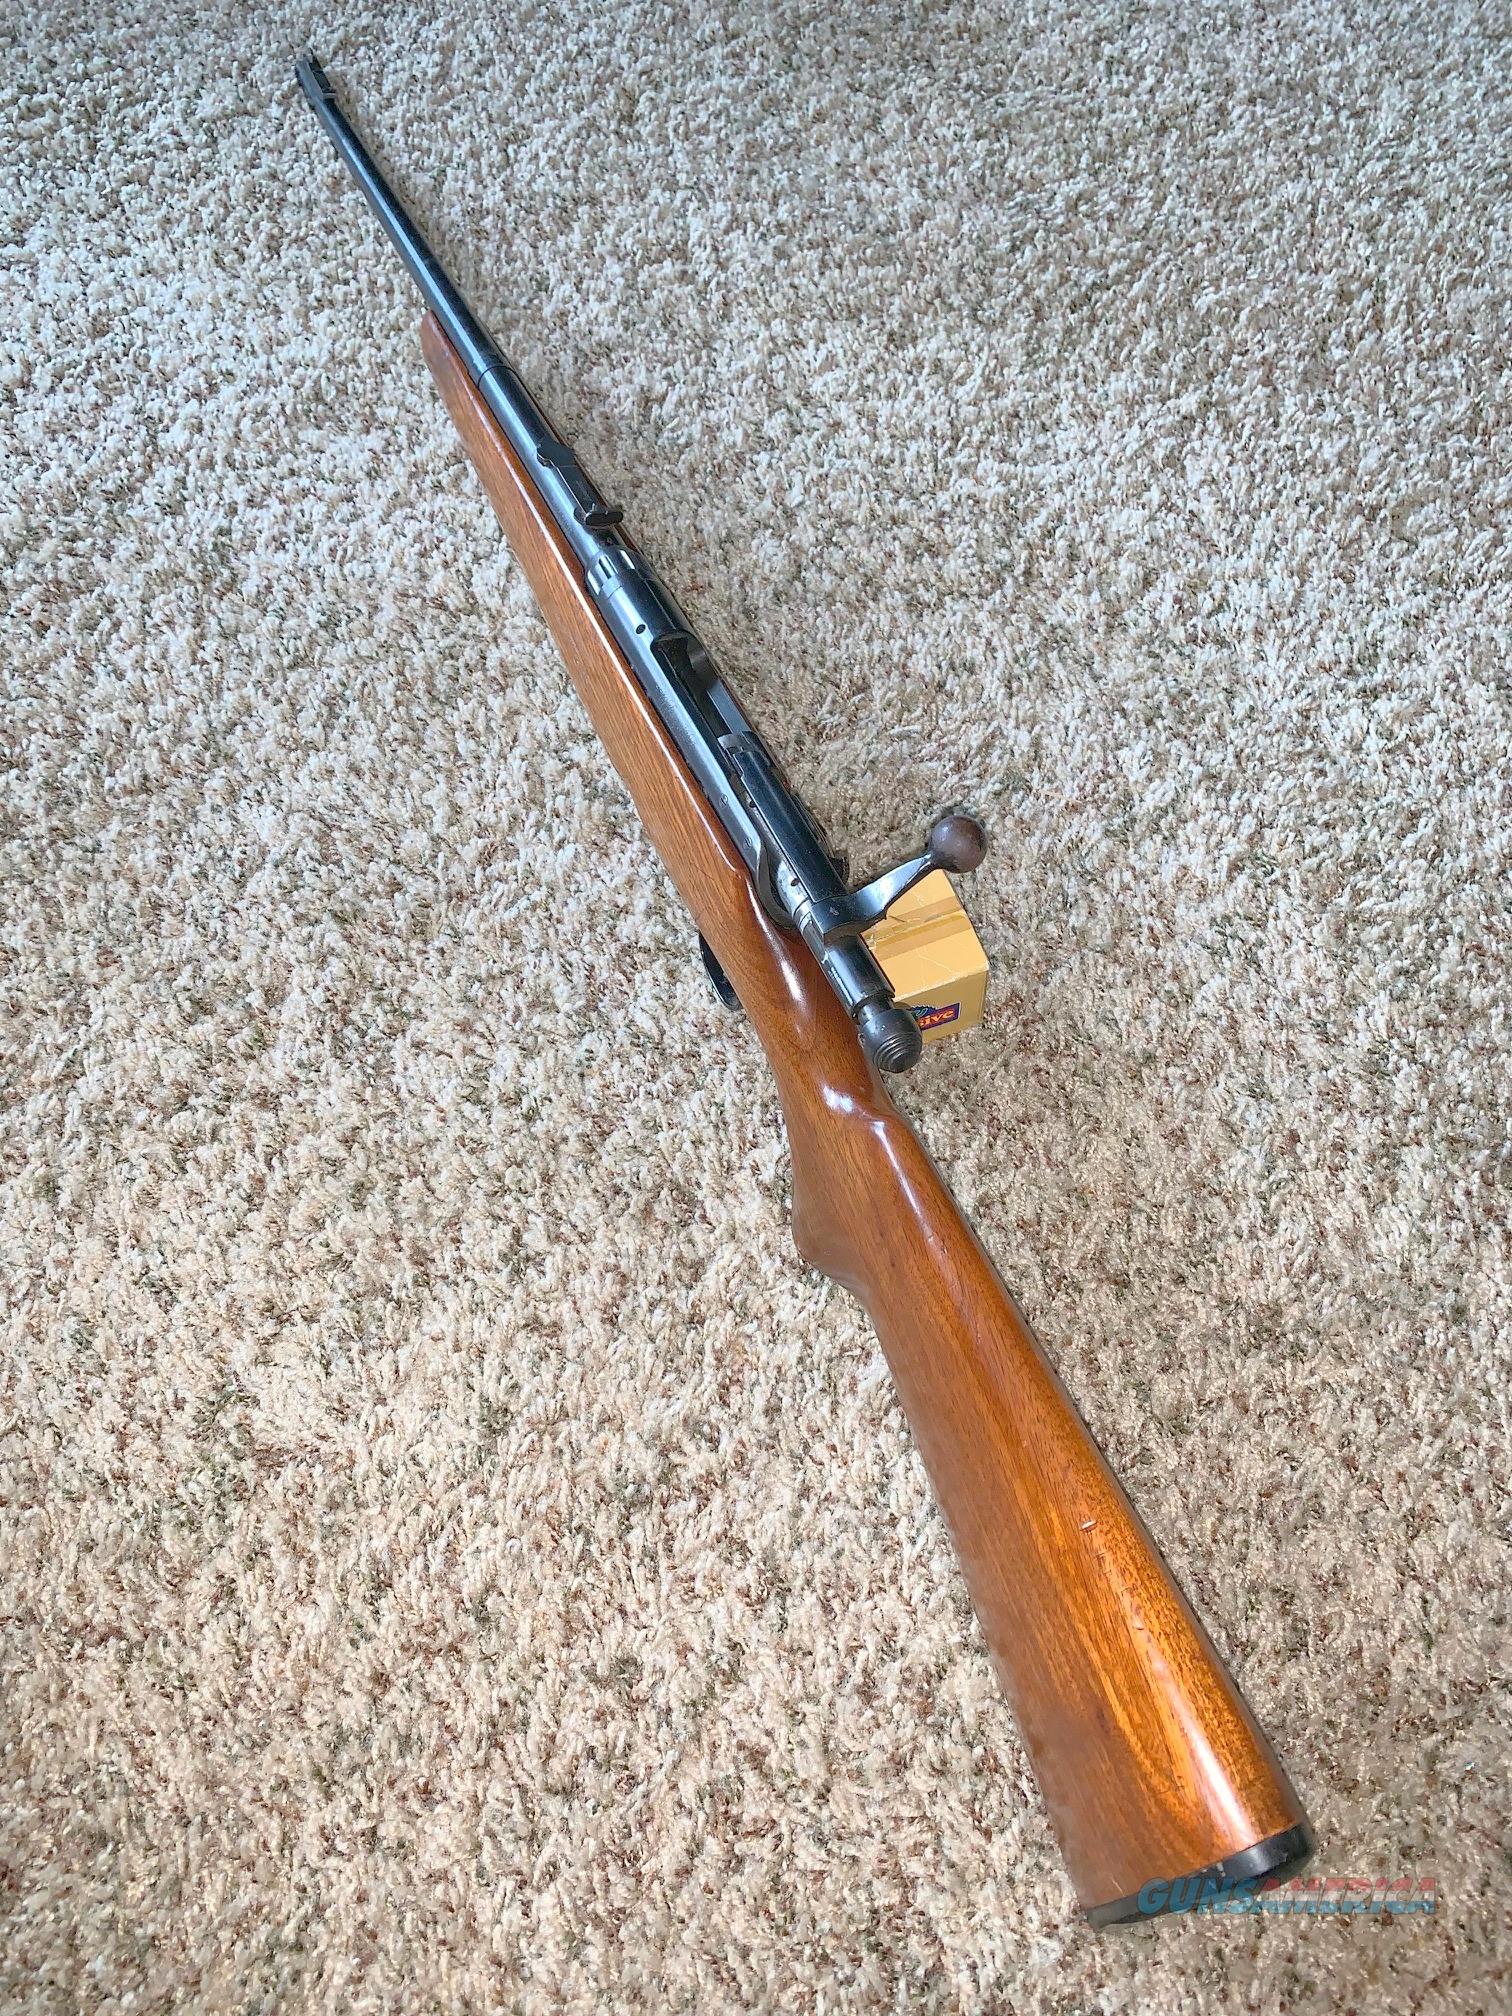 222 remington rifle for sale